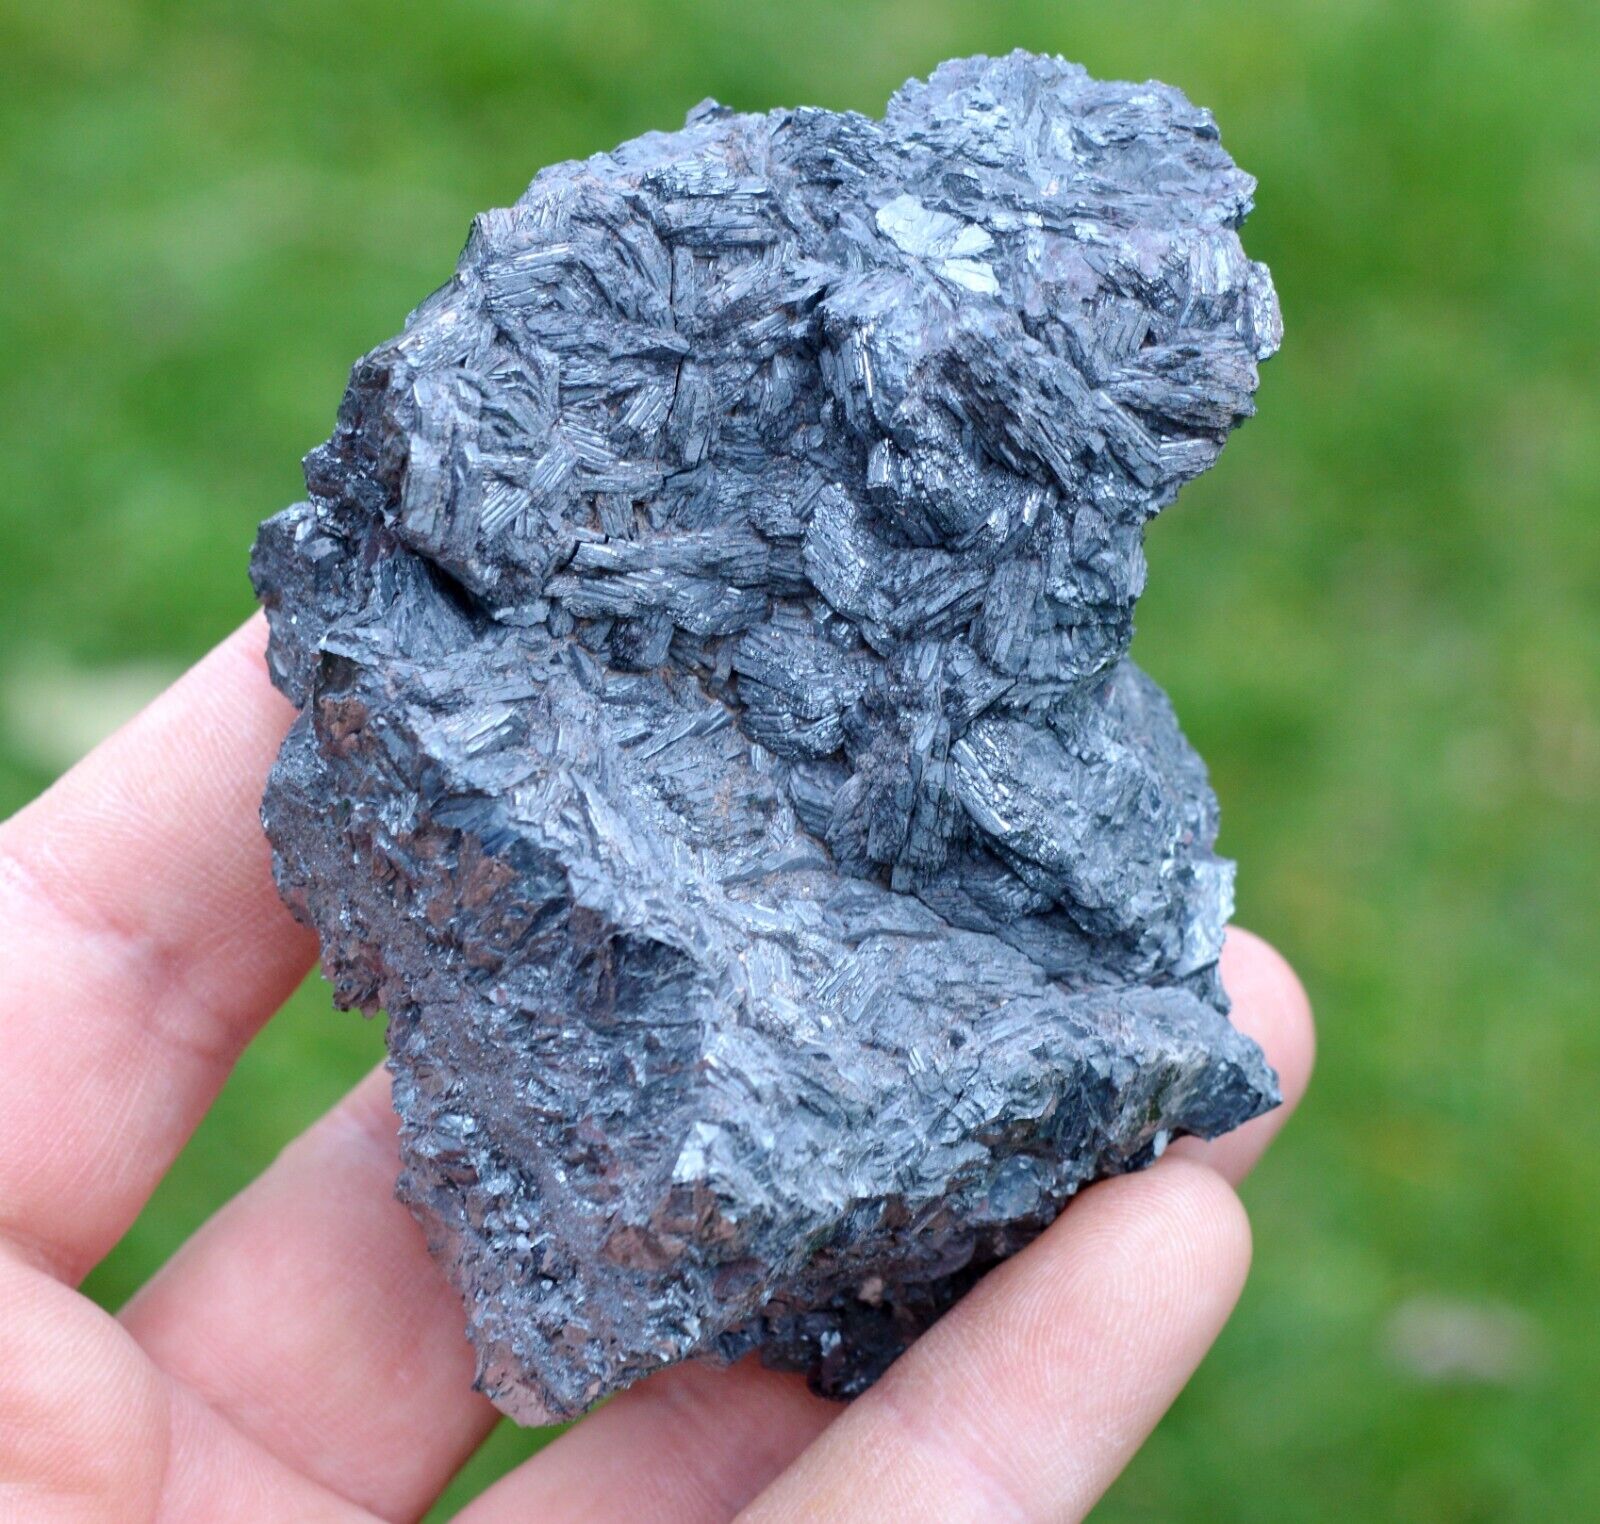 Hematite 655 grams - Le Haycot, Brézouard Massif, Ste Marie-aux-Mines, France